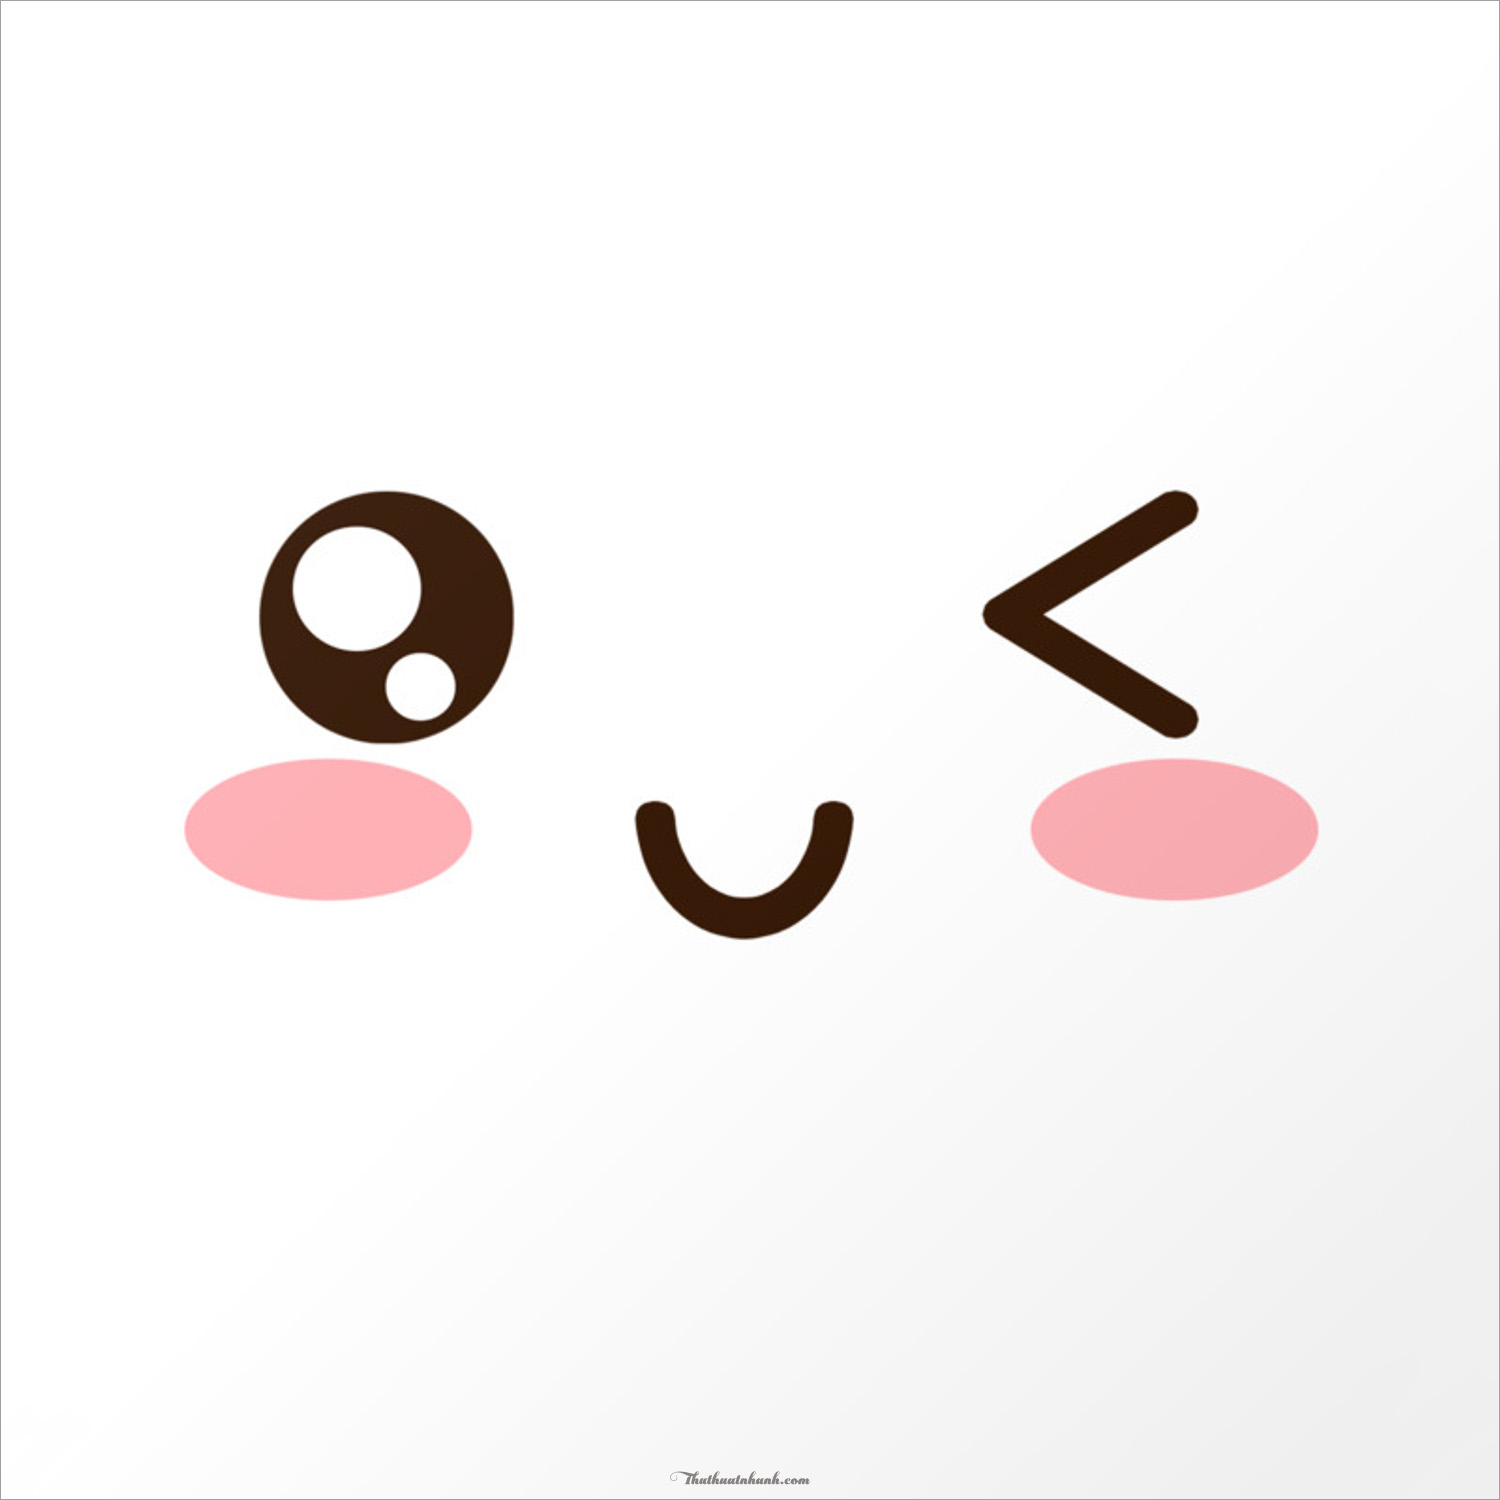 Emoji Nhật Kaomoji: Bạn đang tìm kiếm những emoji độc đáo để trang trí cho tin nhắn hoặc tương tác trên mạng xã hội? Bộ sưu tập emoji Nhật Kaomoji của chúng tôi sẽ khiến bạn bất ngờ với những biểu tượng đáng yêu và phong phú, giúp bạn thể hiện được cảm xúc của mình một cách dễ dàng và thú vị.